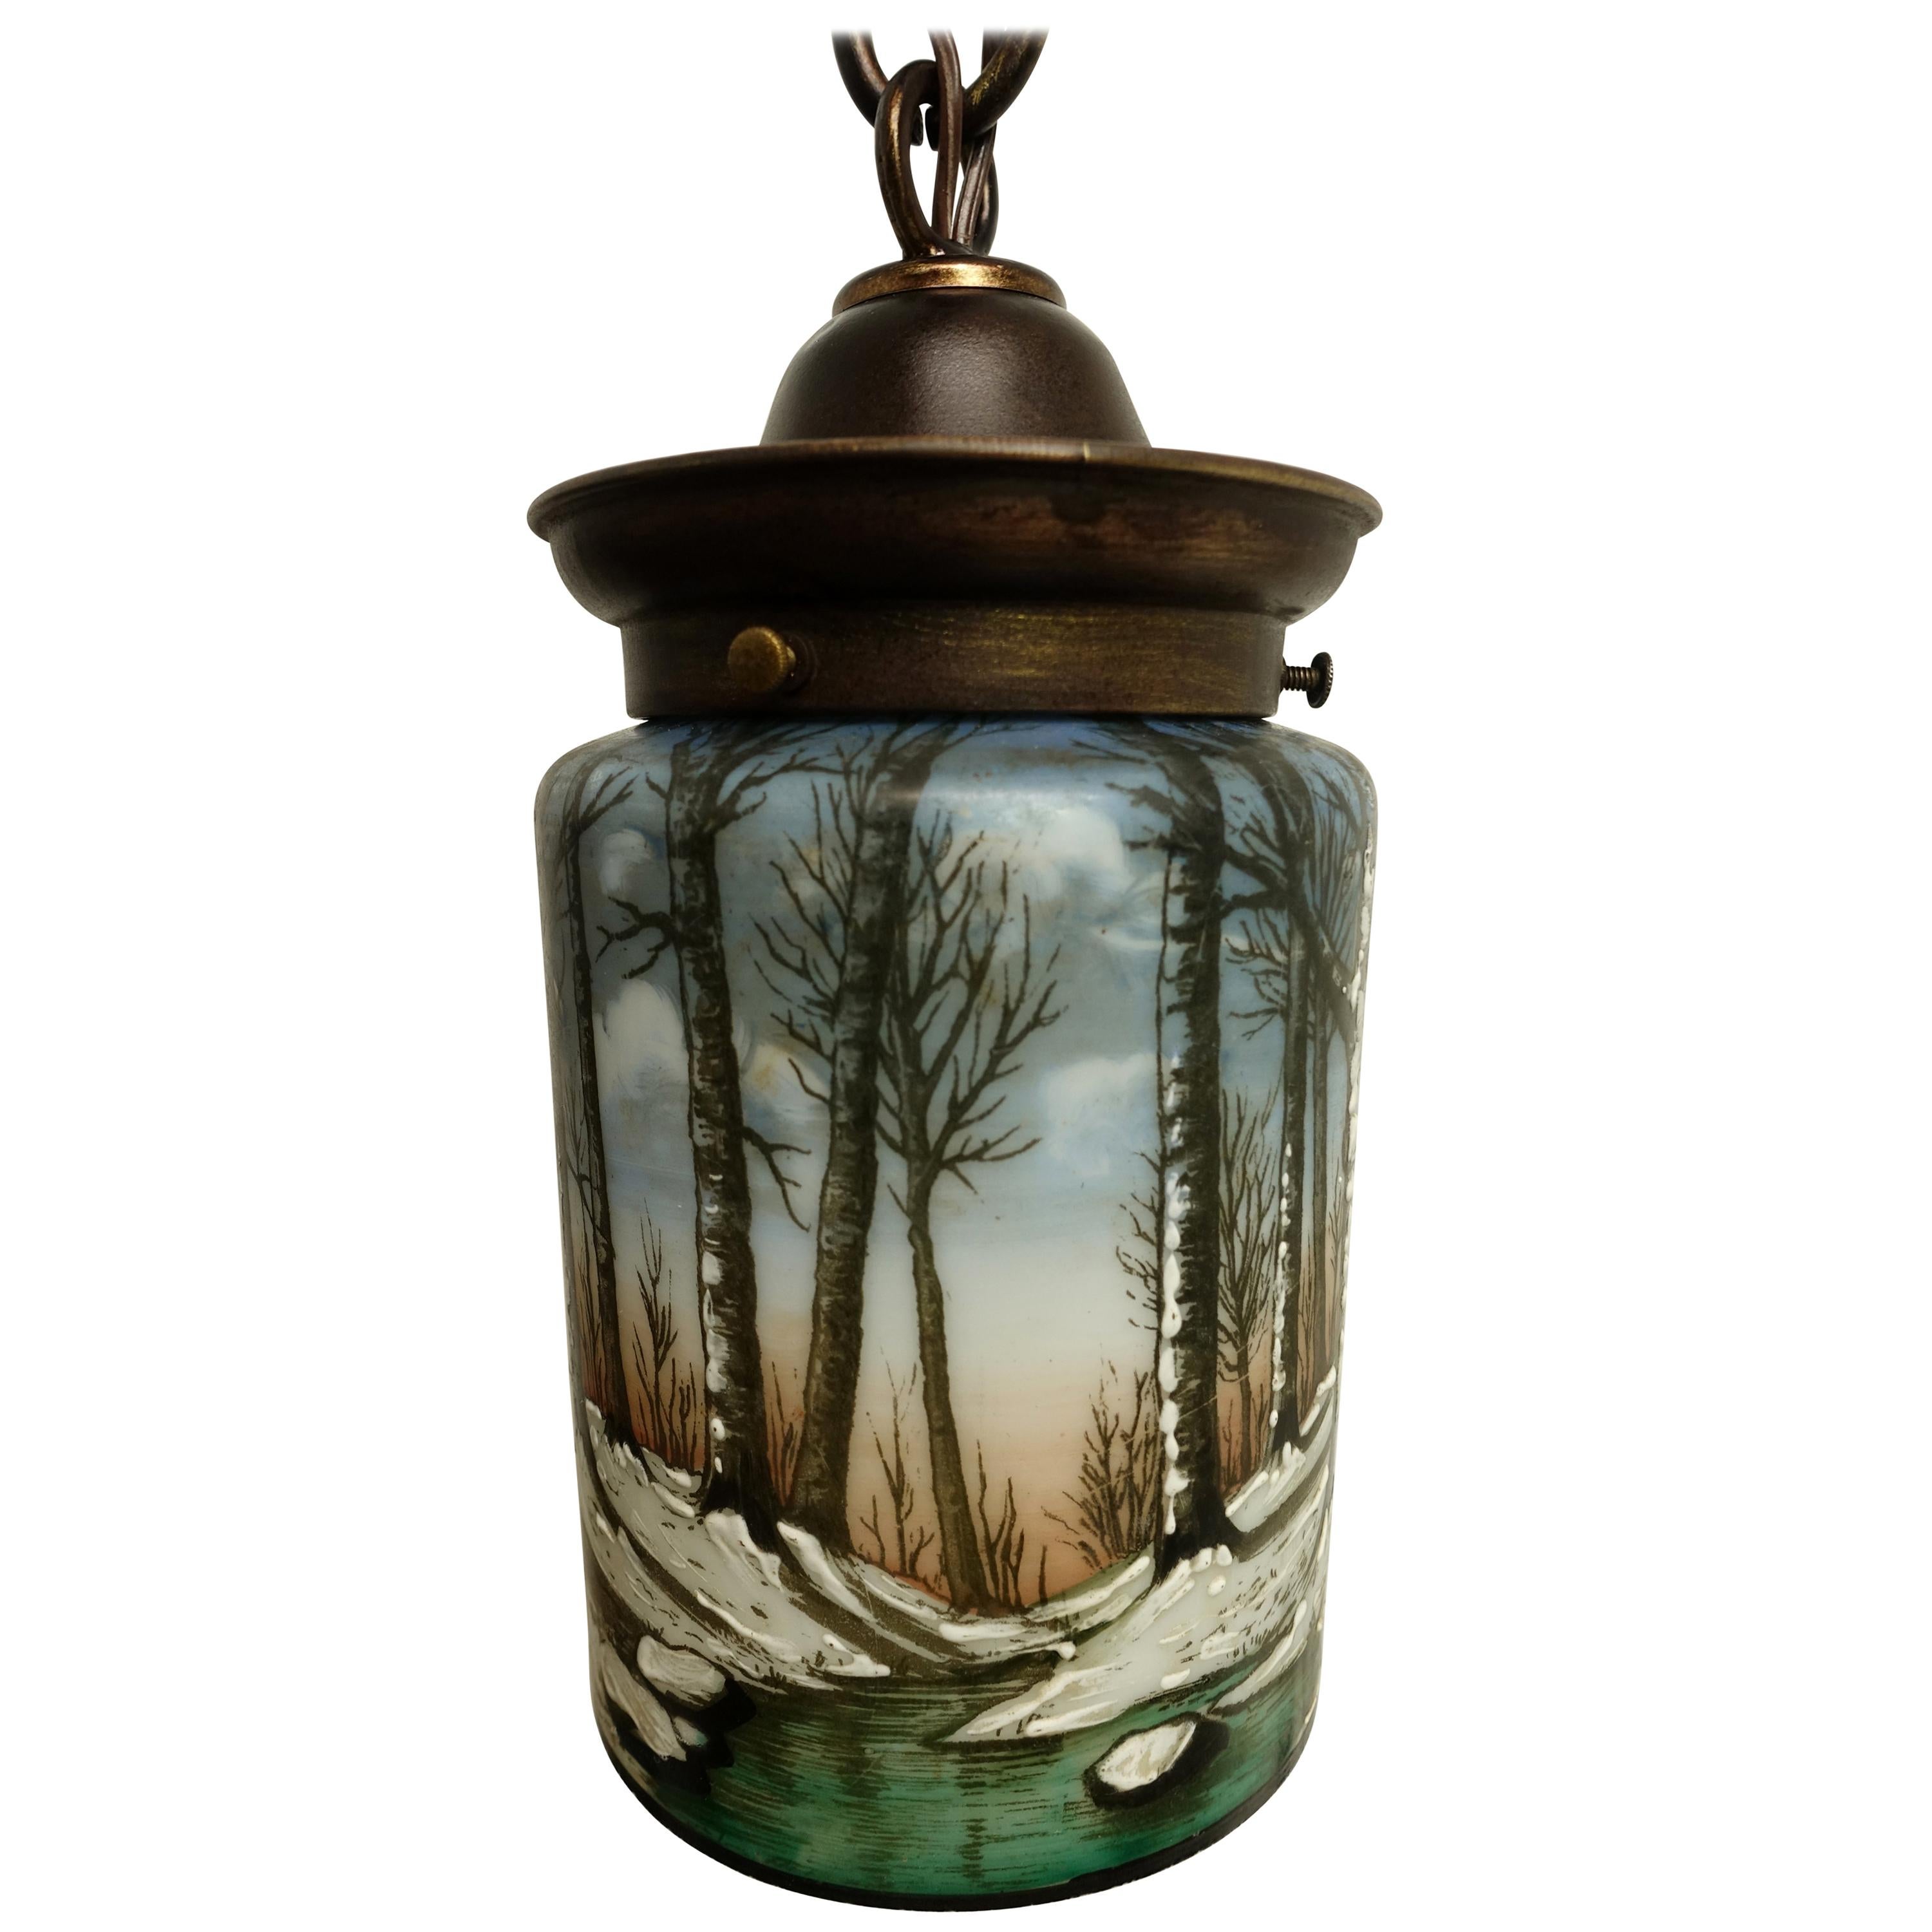 American Arts & Crafts Enameled Glass Hanging Lantern